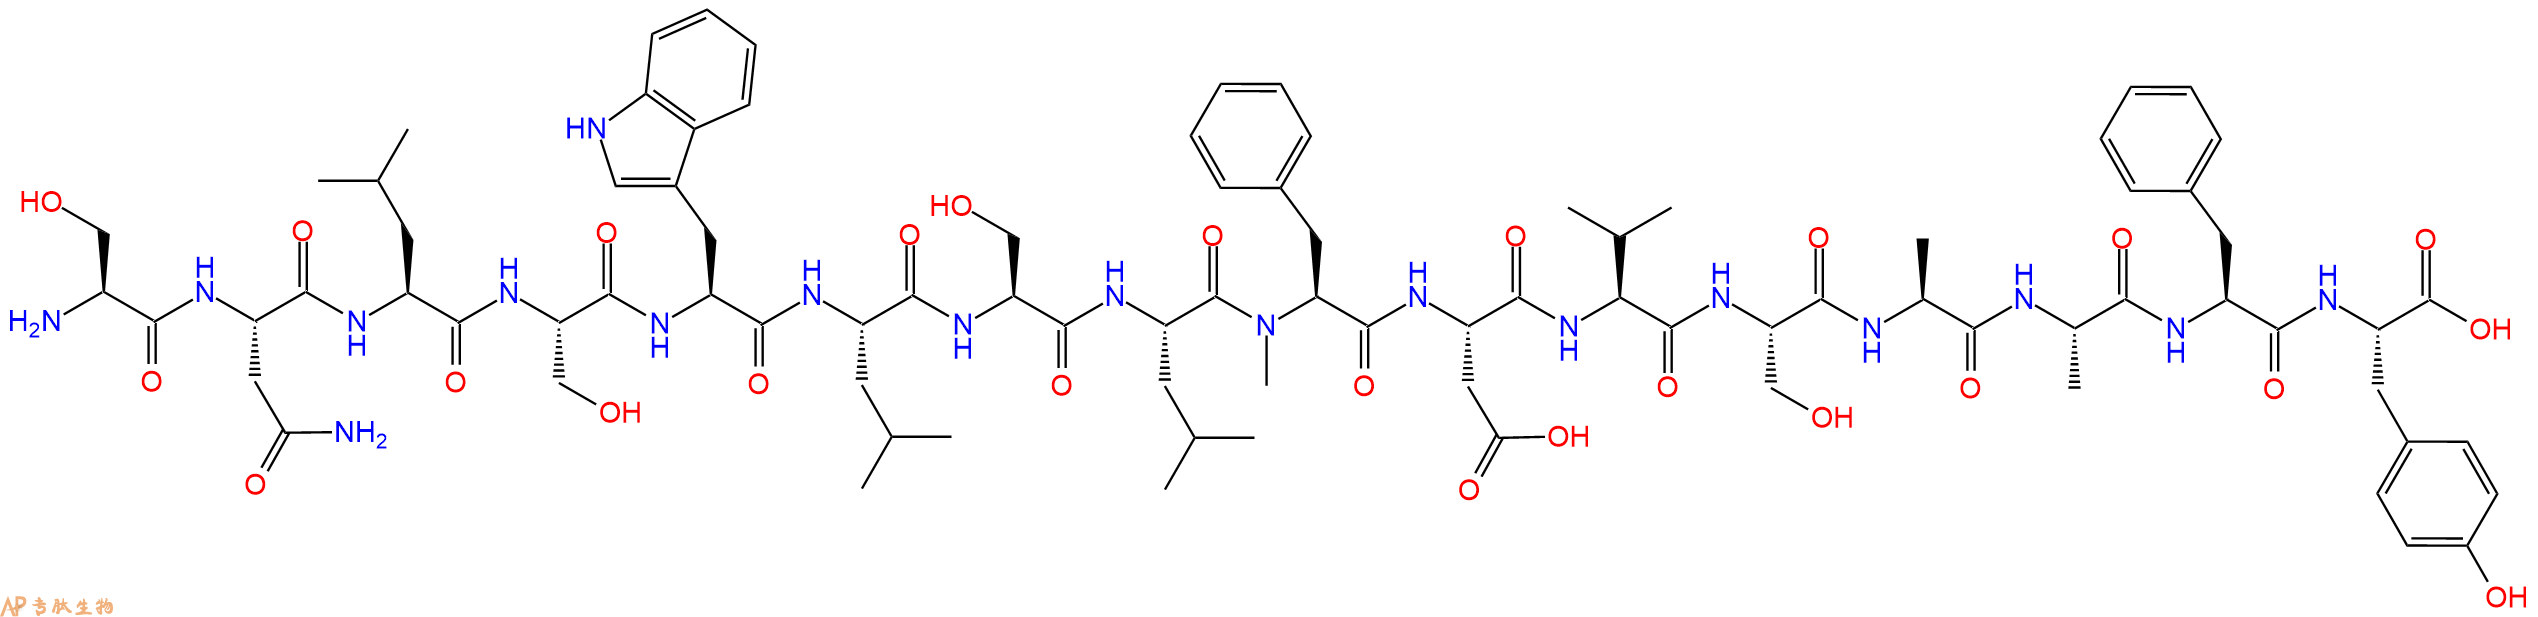 专肽生物产品H2N-Ser-Asn-Leu-Ser-Trp-Leu-Ser-Leu-(NMe)Phe-Asp-V